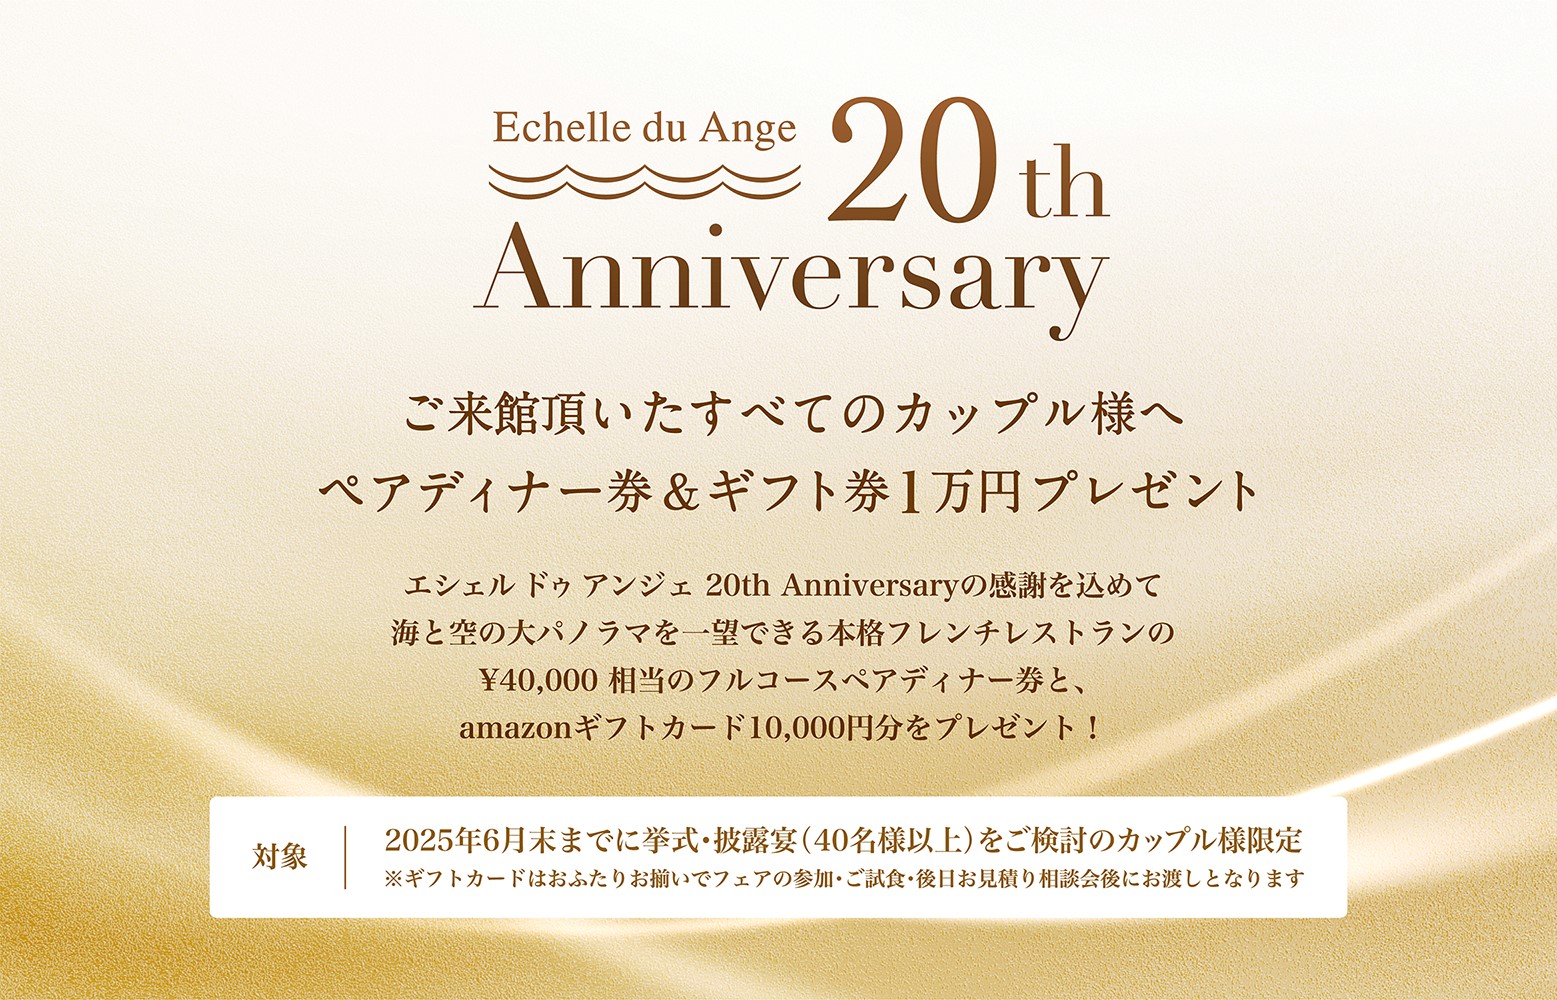 エシェル ドゥ アンジェ 20th Anniversary